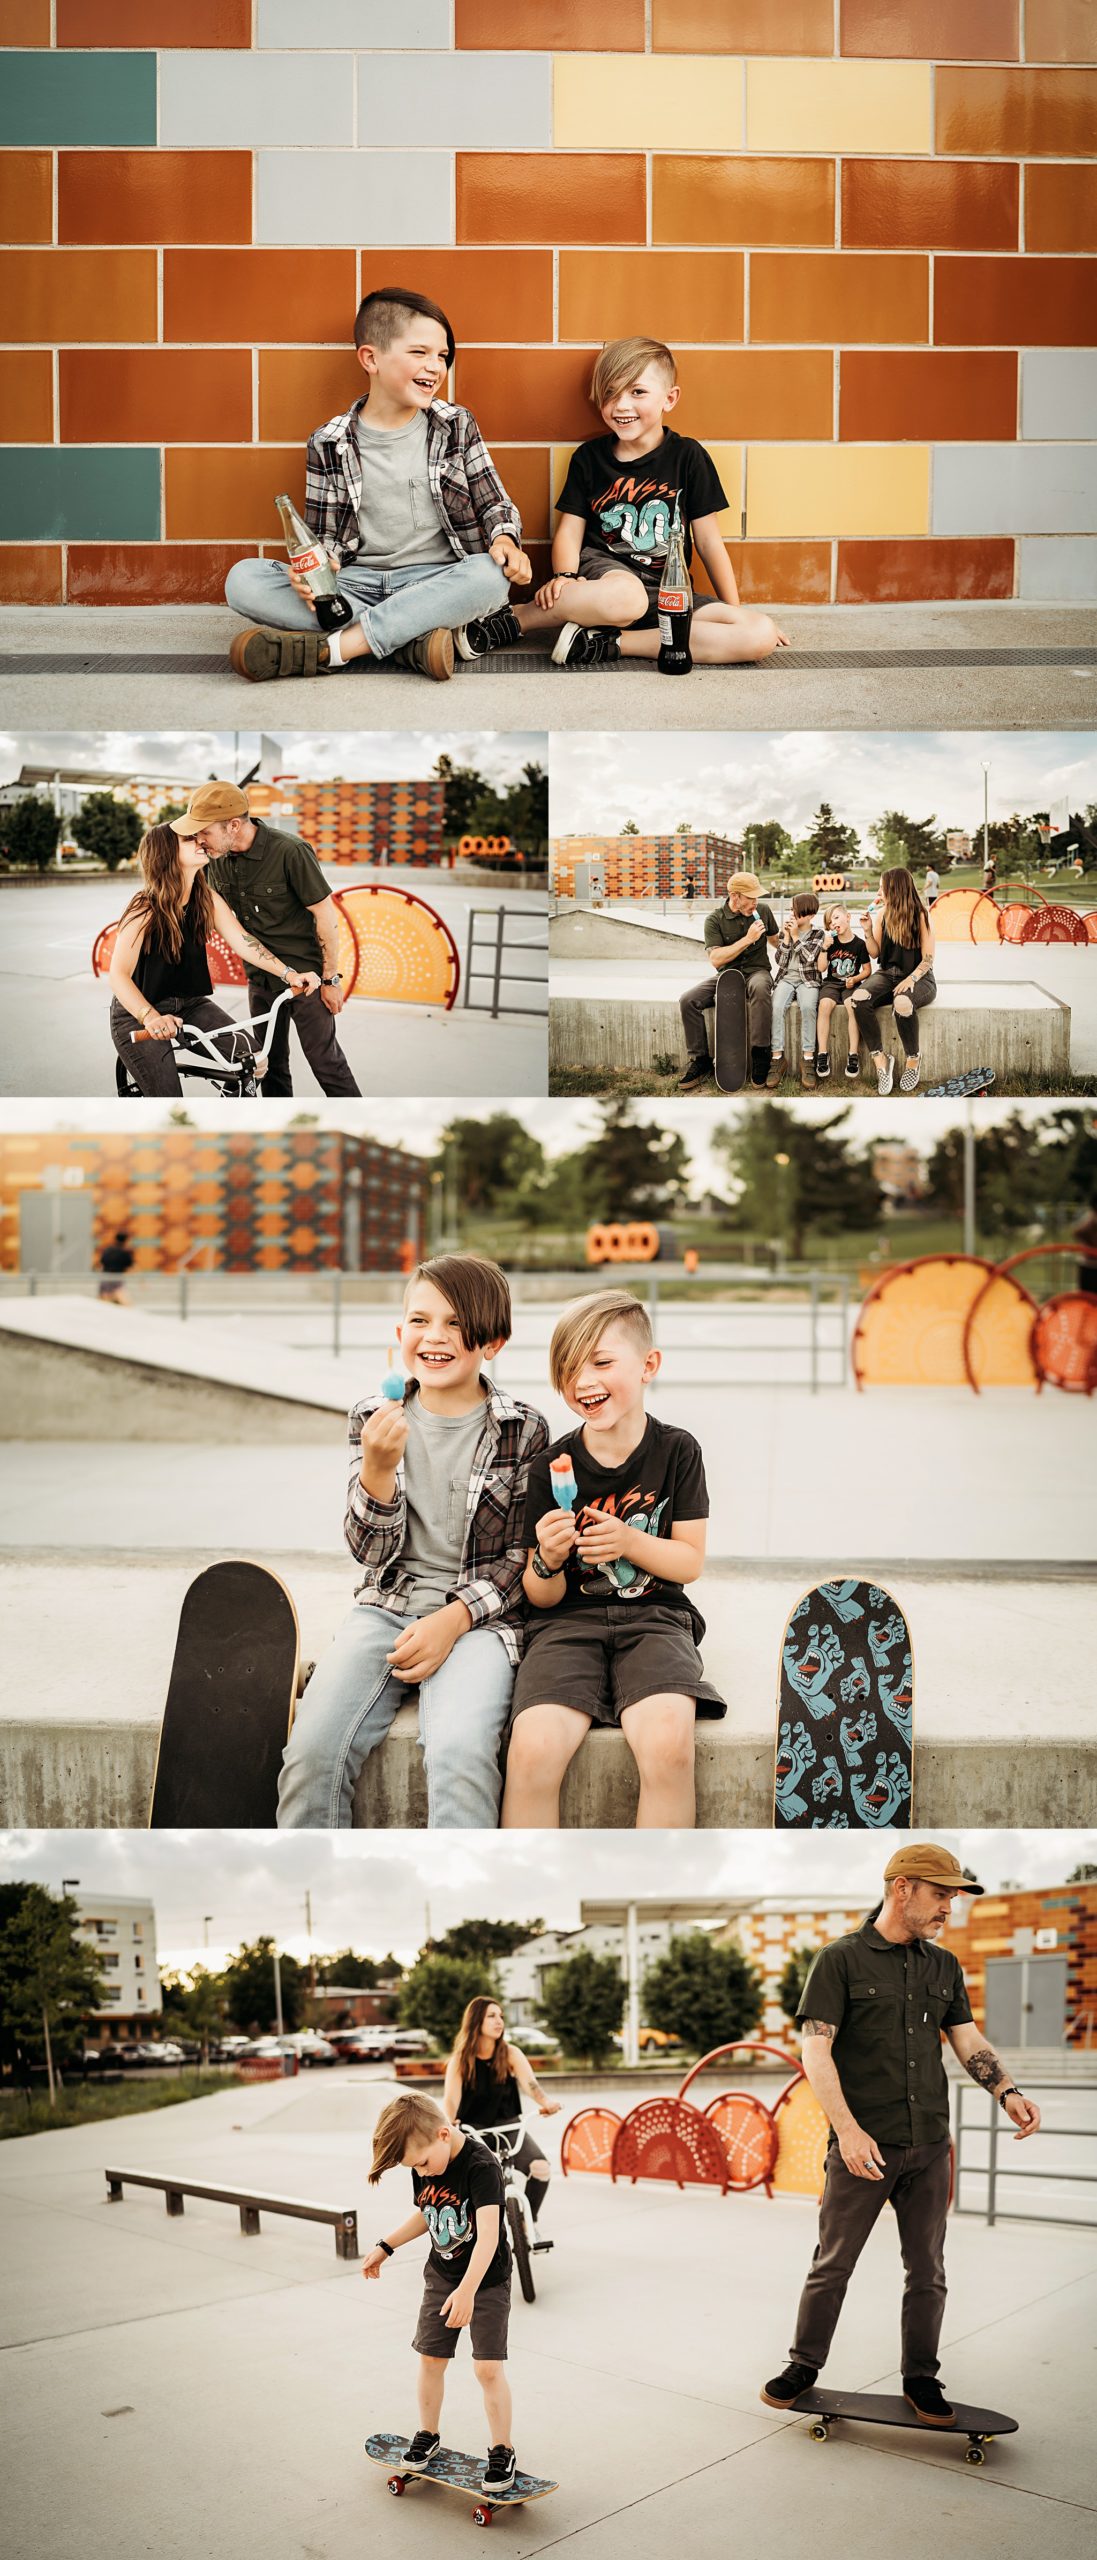 alex morris design family photographer denver colorado, skate park, skateboard